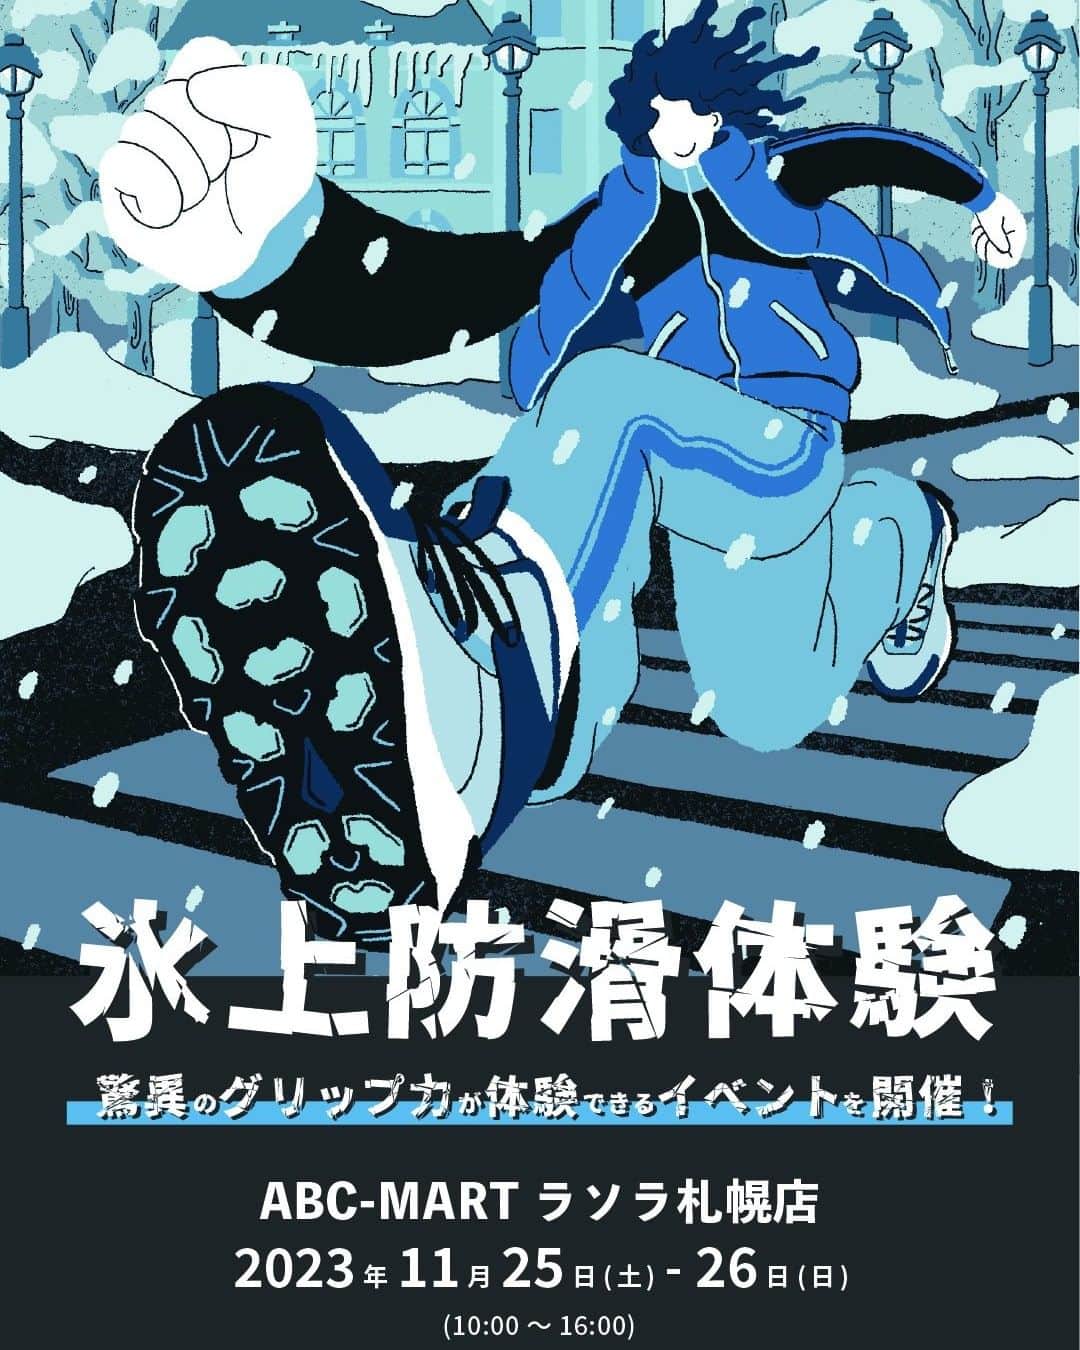 ABCマートのインスタグラム：「. HI-TECHブーツ「氷上防滑体験会」開催！ ABC-MART  ラソラ札幌店にて11/25(土)、26(日)の2日間で「HI-TECHブーツ氷上防滑体験会」を開催いたします。 「HI-TEC ( @hitec_japan )ウィンターブーツ」に搭載された、凍結した路面にも対応する氷上防滑ソール「グラスクロウ」のグリップ力を体験できるイベントhitec_japan )ウィンターブーツ」に搭載された、凍結した路面にも対応する氷上防滑ソール「グラスクロウ」のグリップ力を体験できるイベント@hitec_japanです。 これからの本格的な冬シーズンに向けて、新たなウインターシューズに巡り合う事ができるチャンスです。  氷上防滑体験していただいたお客様には、 限定のハイテックオリジナルグッズをプレゼント！  皆様のご来店をお待ちしております。  #abcmart #abcマート #HI_TECH #HI_TECHブーツ #冬靴 #冬底 #雪道 #防滑対策 #防滑シューズ #防滑ブーツ #凍結路面 #積雪路面 #氷上路面」